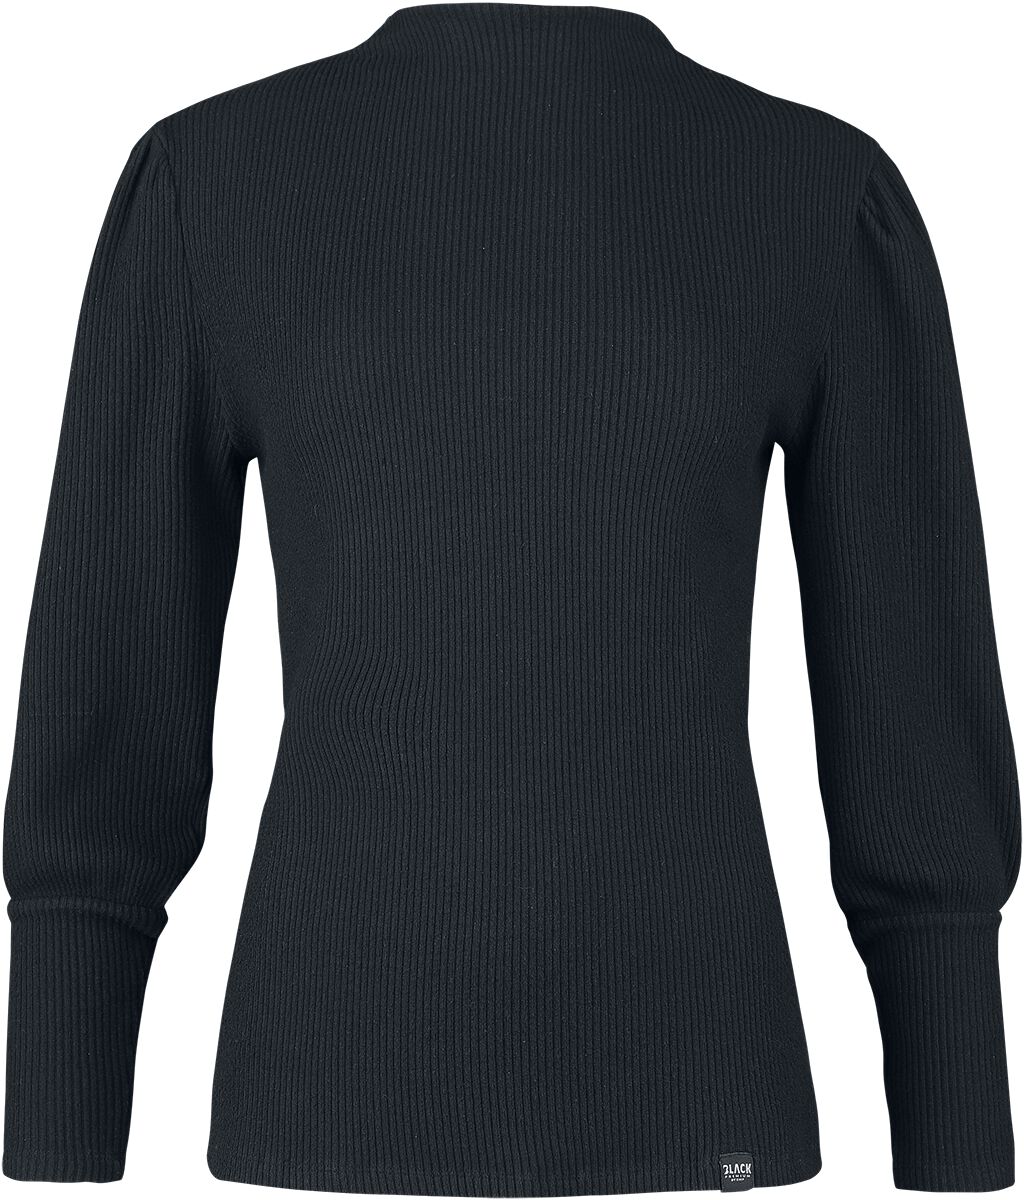 Levně Black Premium by EMP Top s dlouhými, nařasenými rukávy Dámské tričko s dlouhými rukávy černá